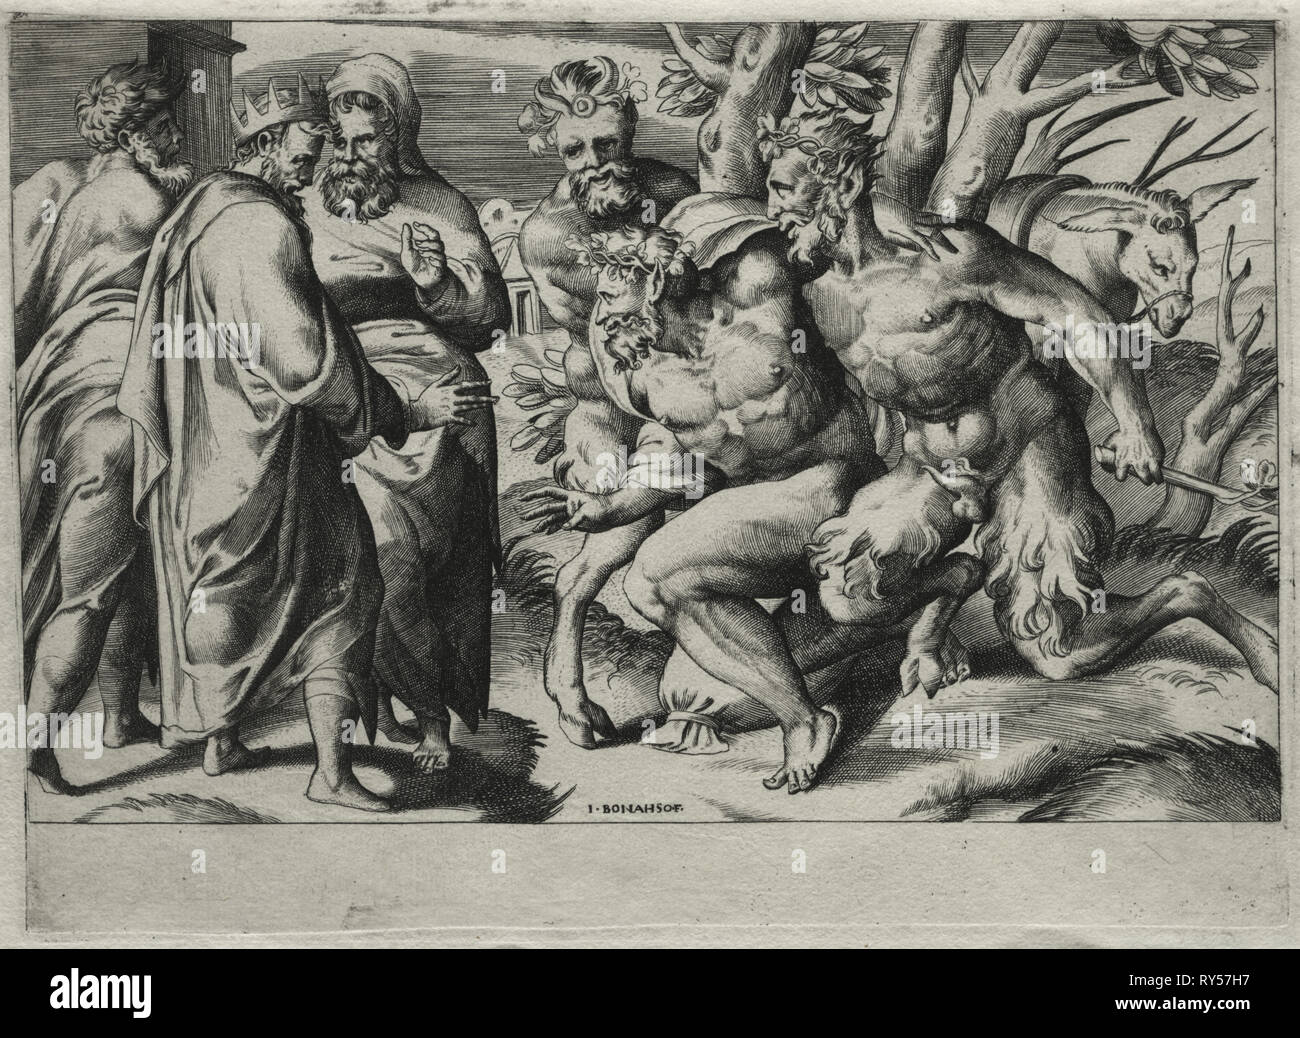 Silène et le roi Midas, milieu du 16ème siècle. Giulio Bonasone (Italien), ch. 1510-après 1576), après Perino del Vaga (Italien, 1500/01-1547). Fiche technique : 16,9 x 22,9 cm (6 5/8 x 9 in.) ; platemark : 15,9 x 21,9 cm (6 1/4 x 8 5/8 po Banque D'Images